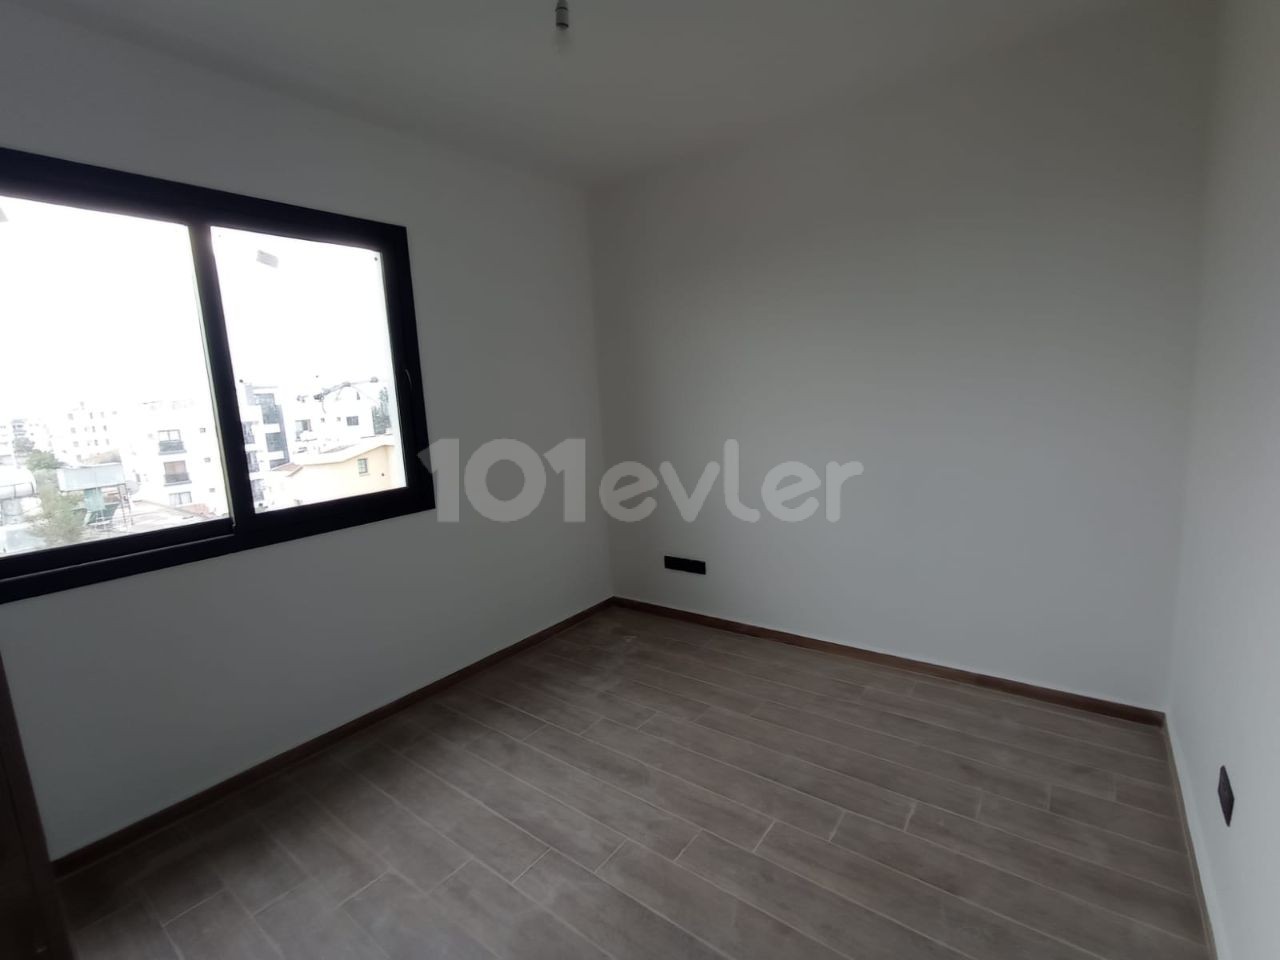 2+1 160 m² Penthouse zum Verkauf in der Gegend von Gönyeli